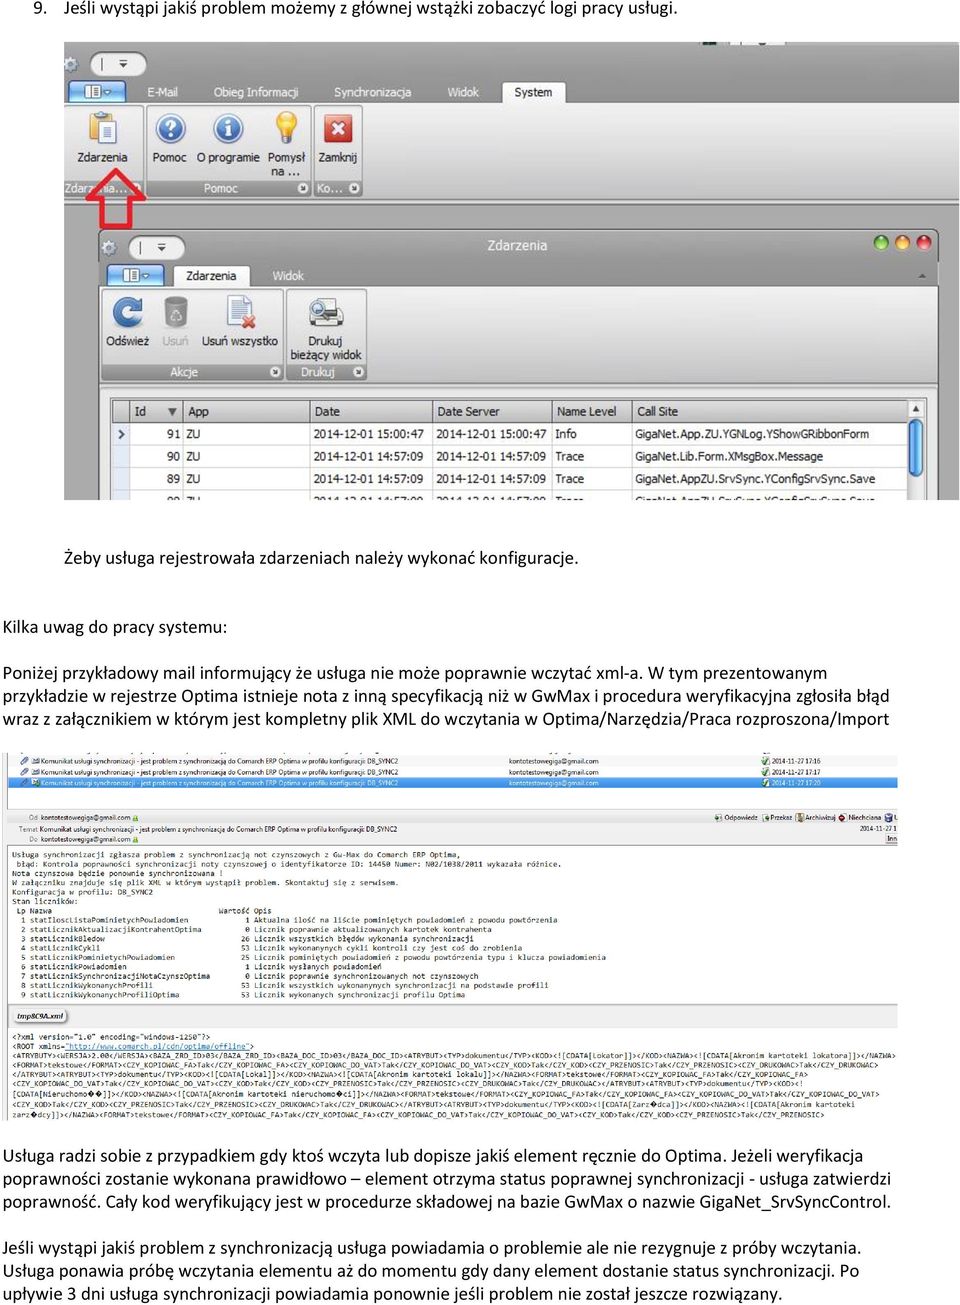 W tym prezentowanym przykładzie w rejestrze Optima istnieje nota z inną specyfikacją niż w GwMax i procedura weryfikacyjna zgłosiła błąd wraz z załącznikiem w którym jest kompletny plik XML do